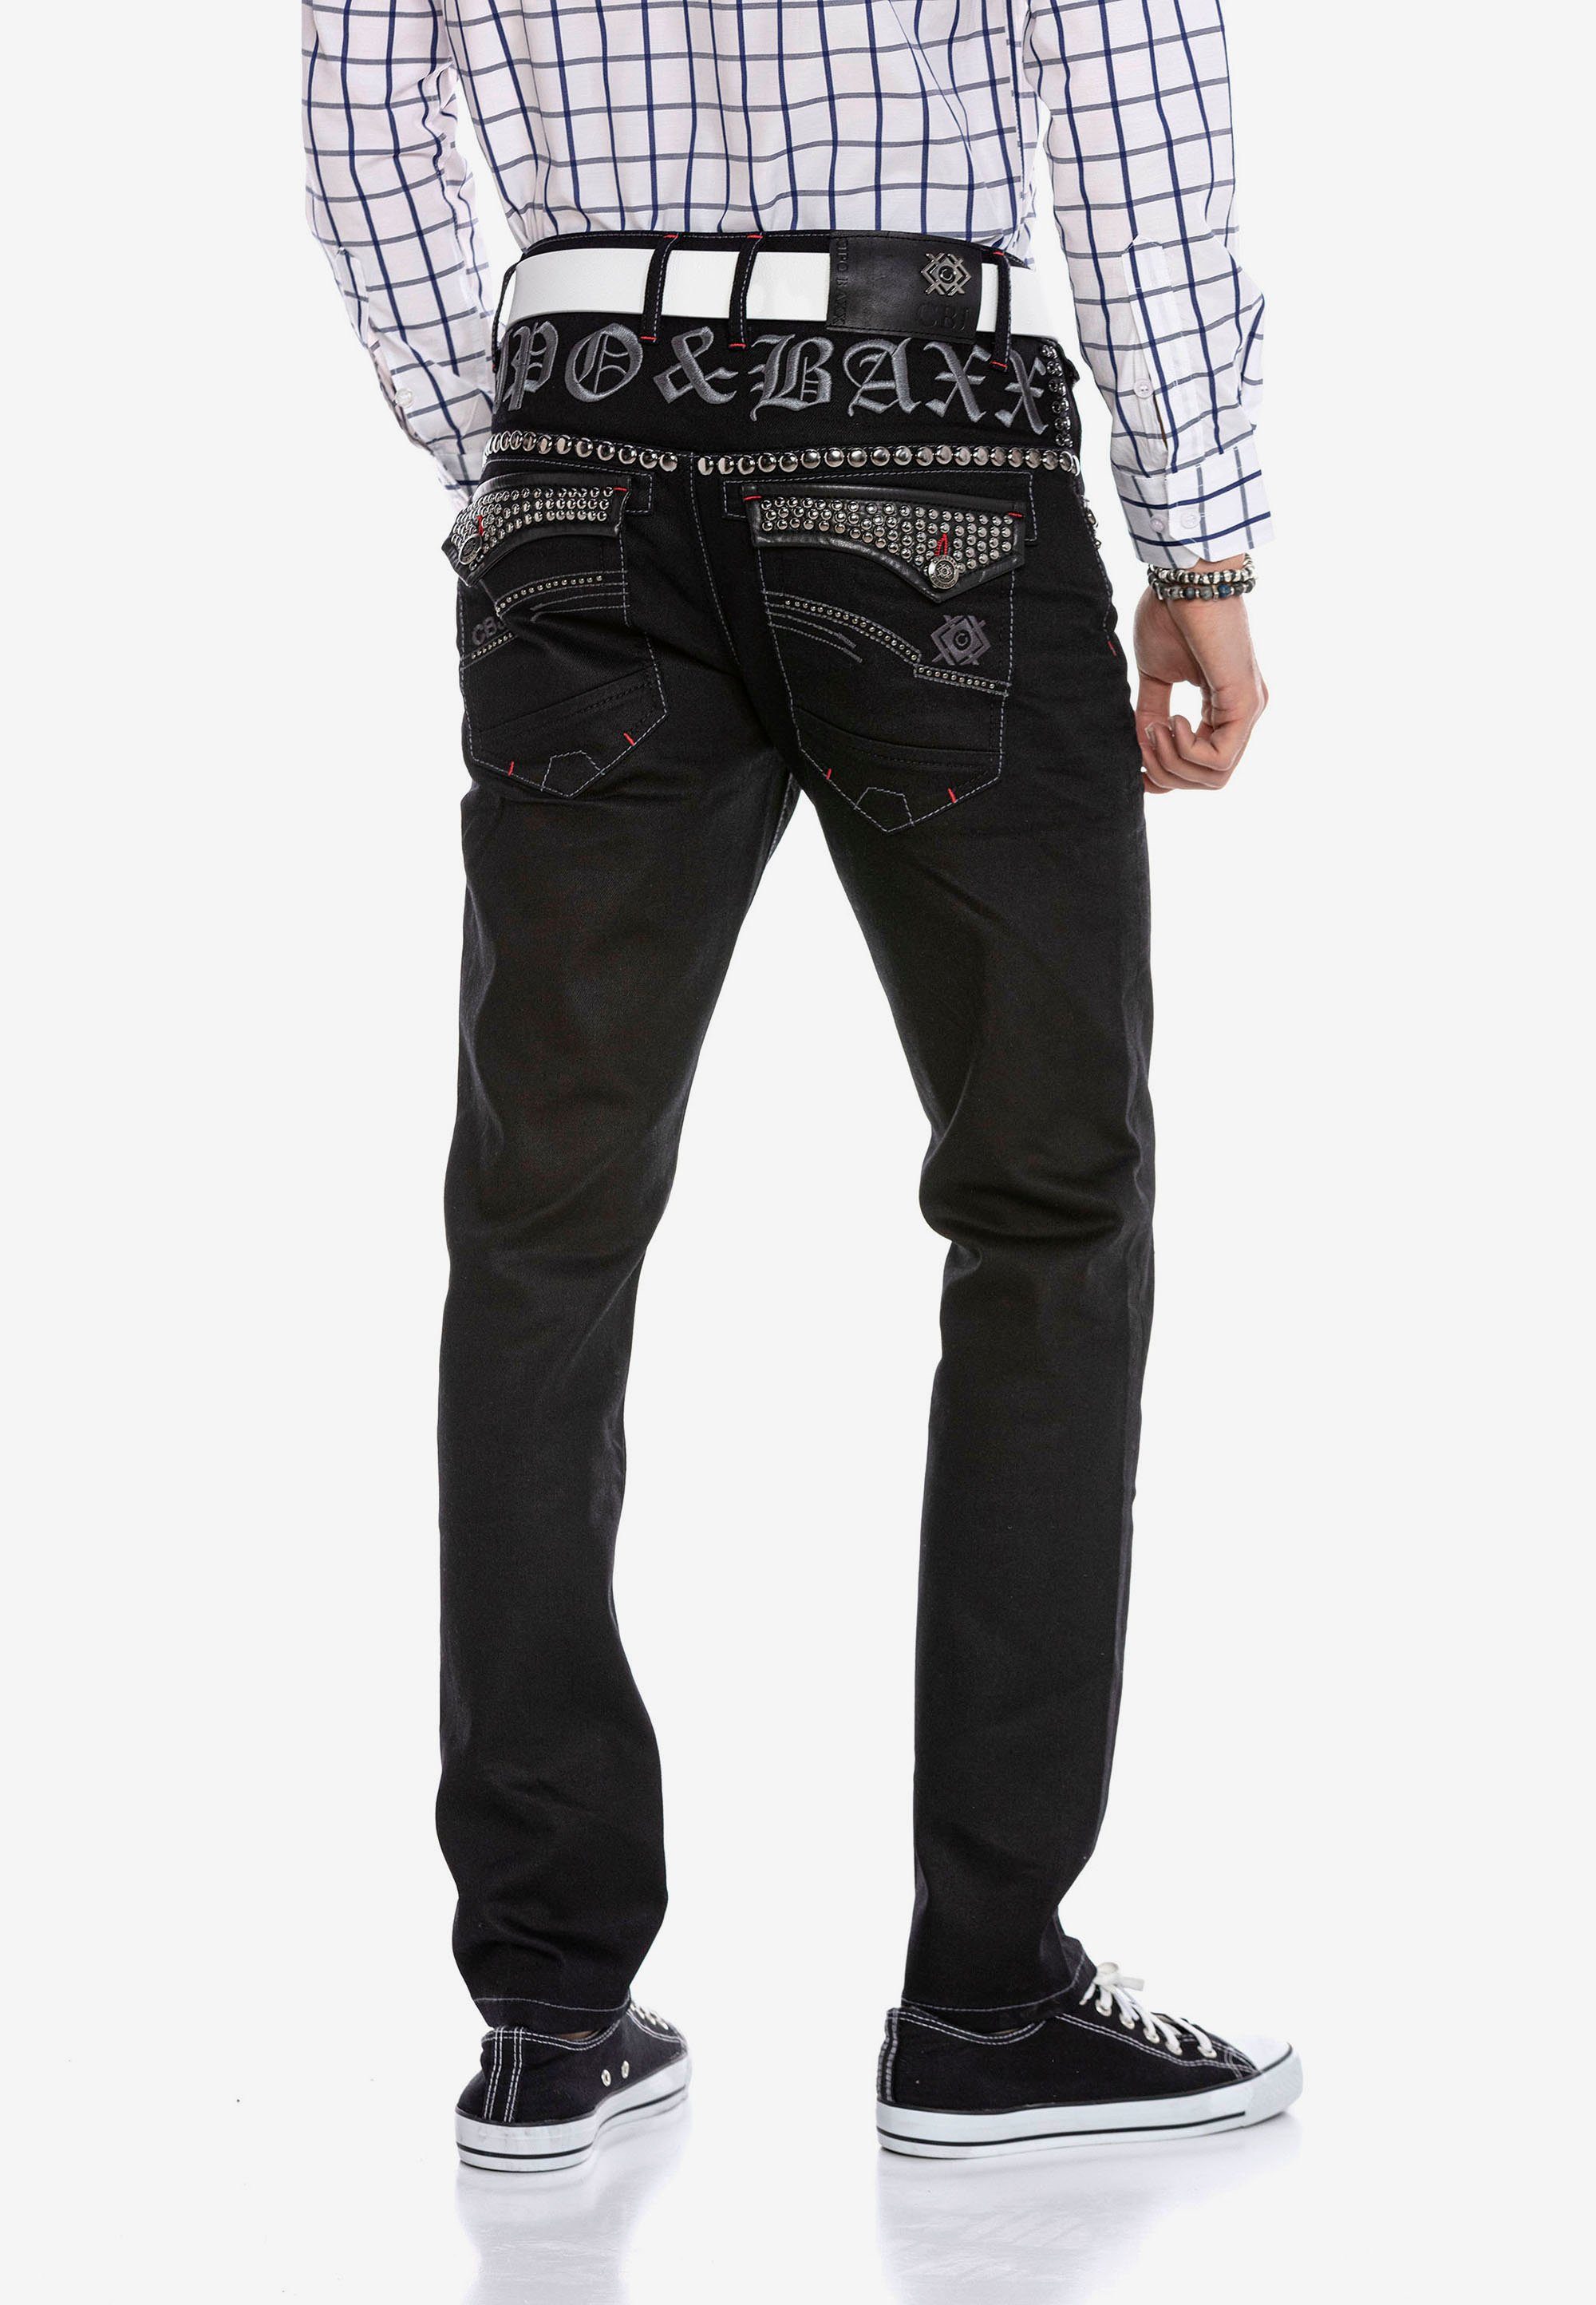 Bequeme Baxx mit trendigen Cipo Jeans & Nieten